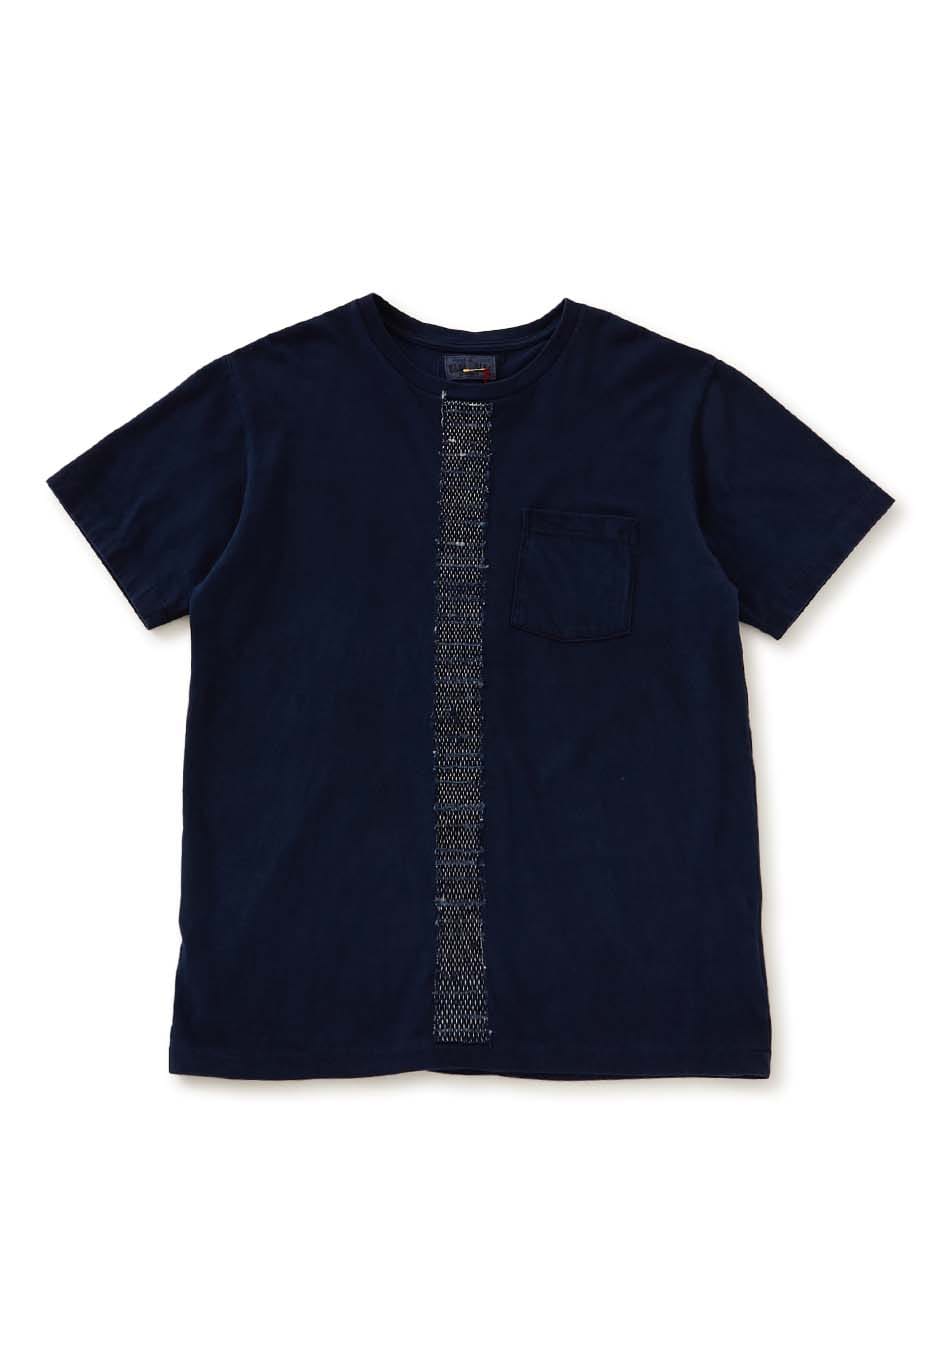 BLUE BLUE JAPAN|Tシャツ|サキオリライン インディゴ Tシャツ